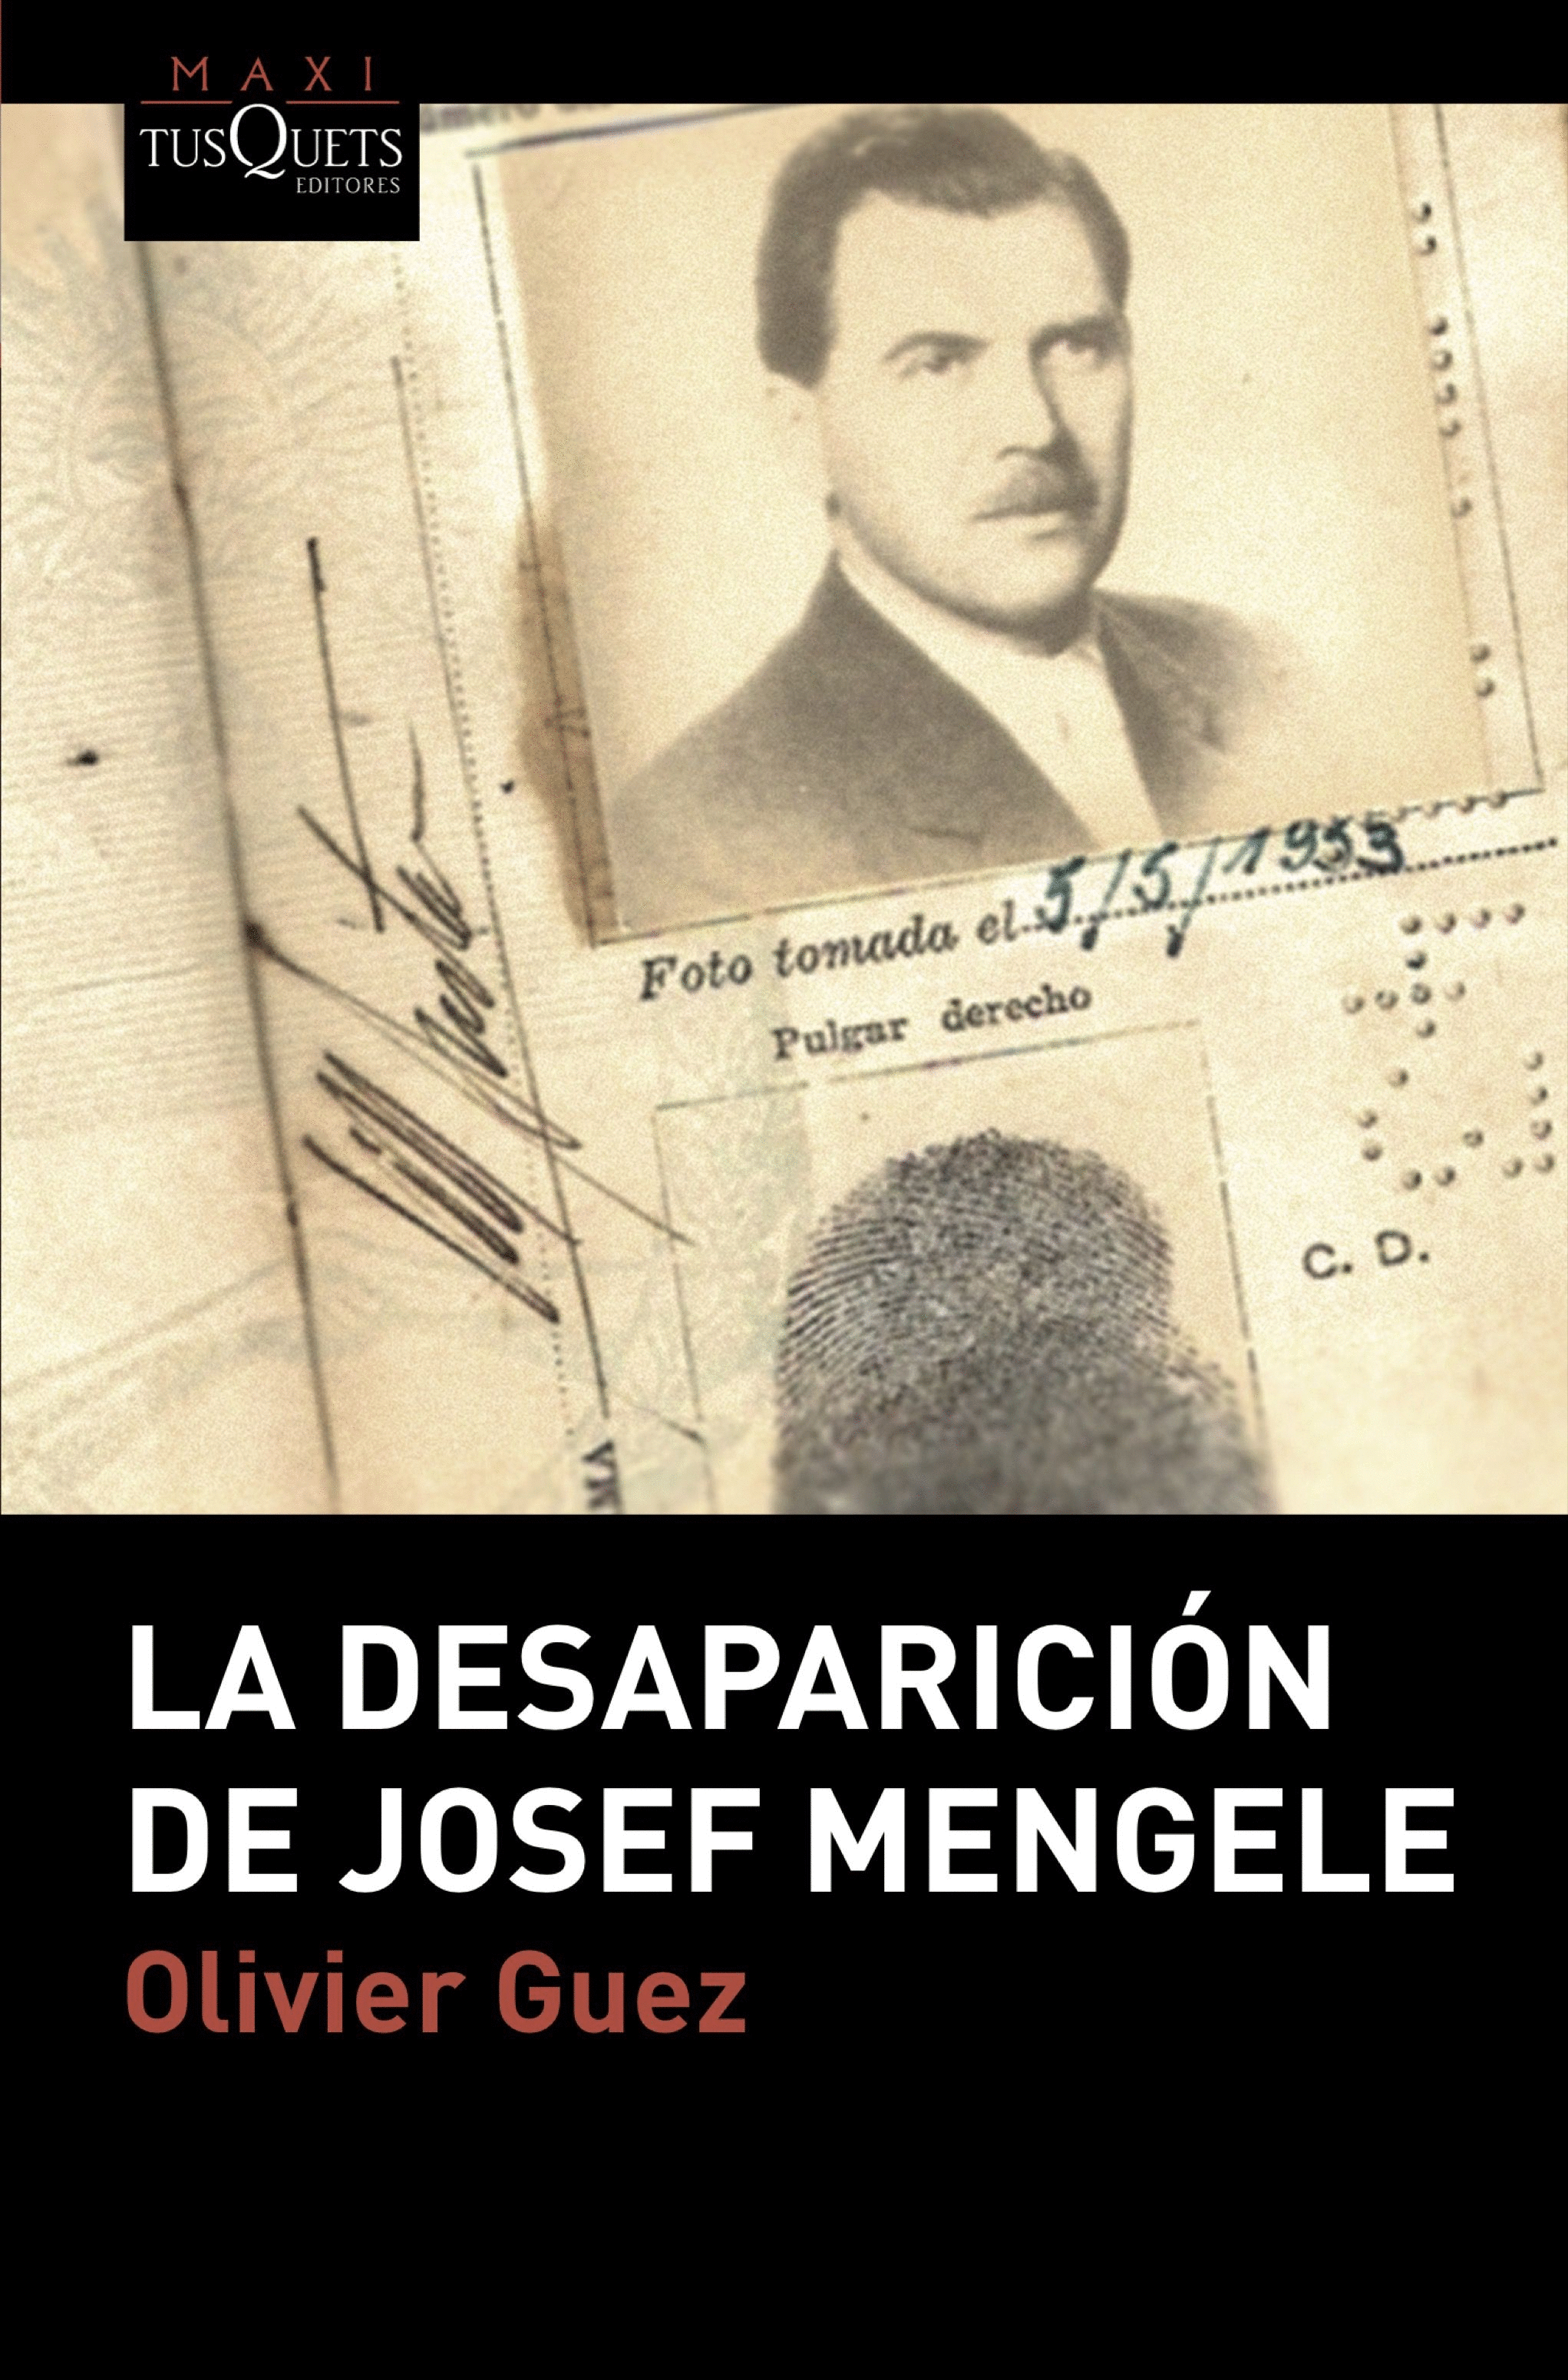 LA DESAPARICION DE JOSEF MENGELE 063/1